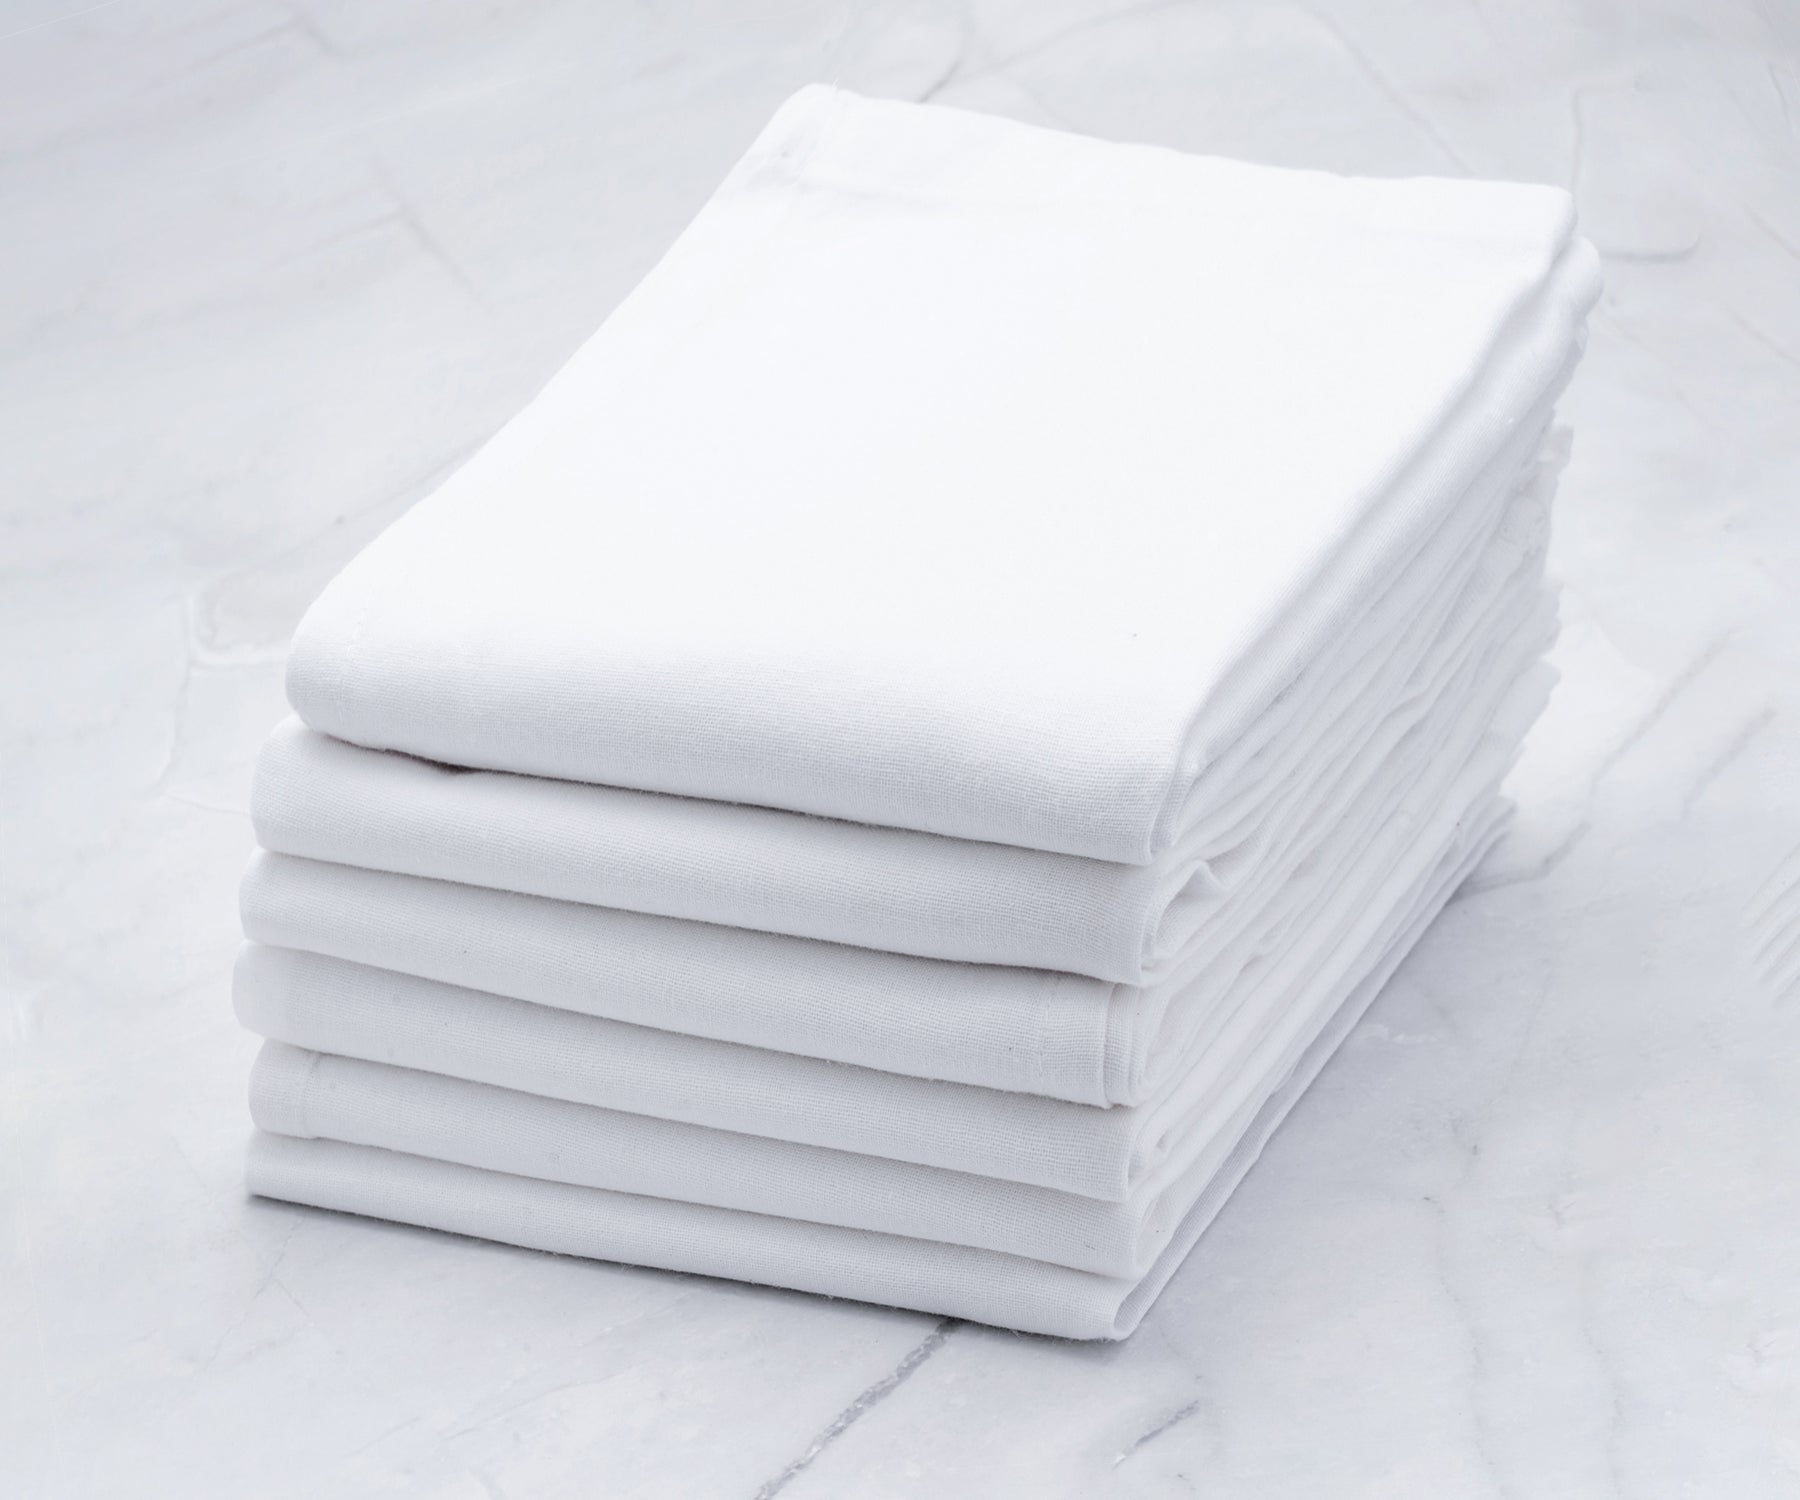 https://www.allcottonandlinen.com/cdn/shop/products/flour-sack-dishtowel-white-11_1800x.jpg?v=1675754119